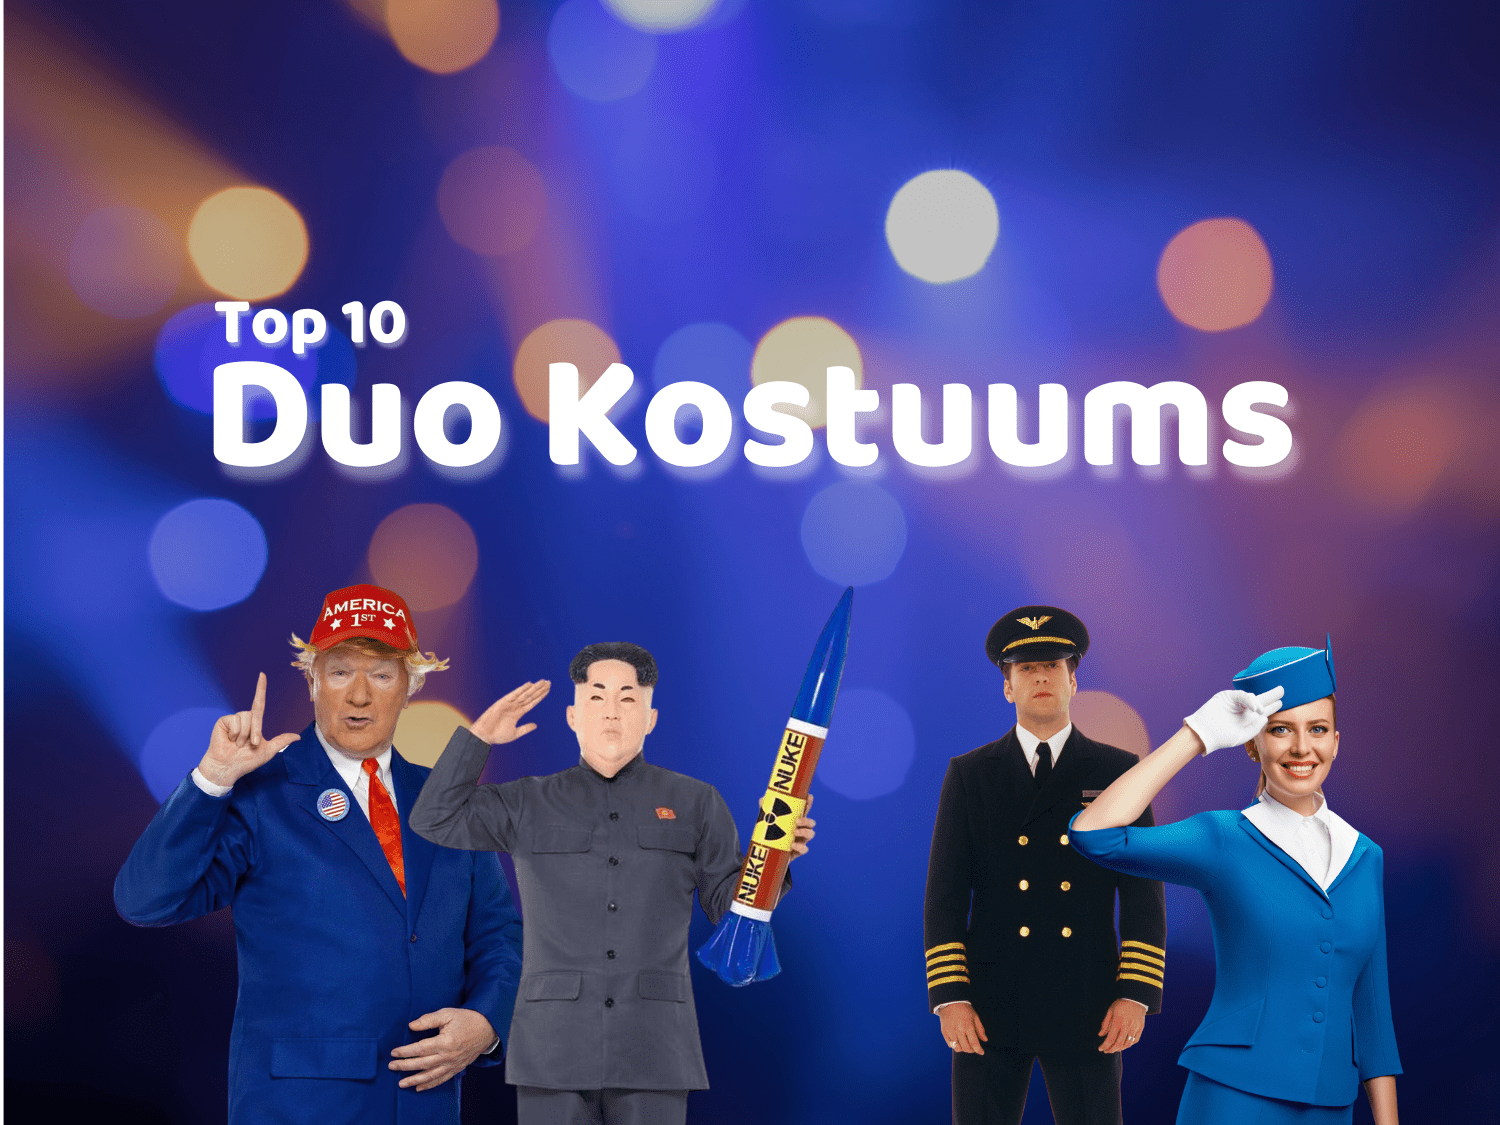 Duo kostuums top 10